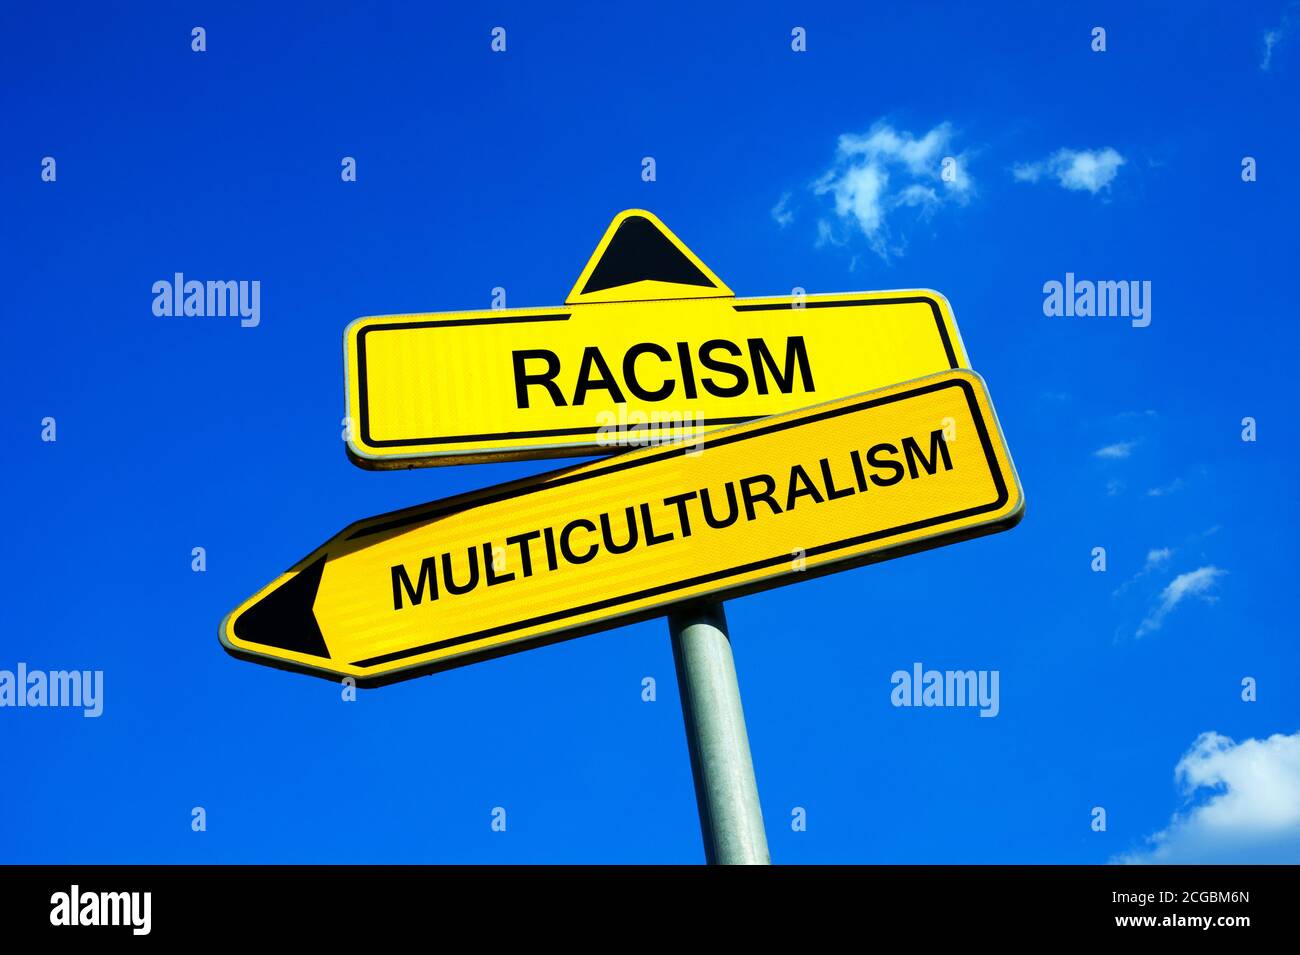 Razzismo vs Multiculturalismo - segnale di traffico con due opzioni - atteggiamento verso la differenza razziale, etnica e culturale. Odio, xenofobia e intolleranza Foto Stock